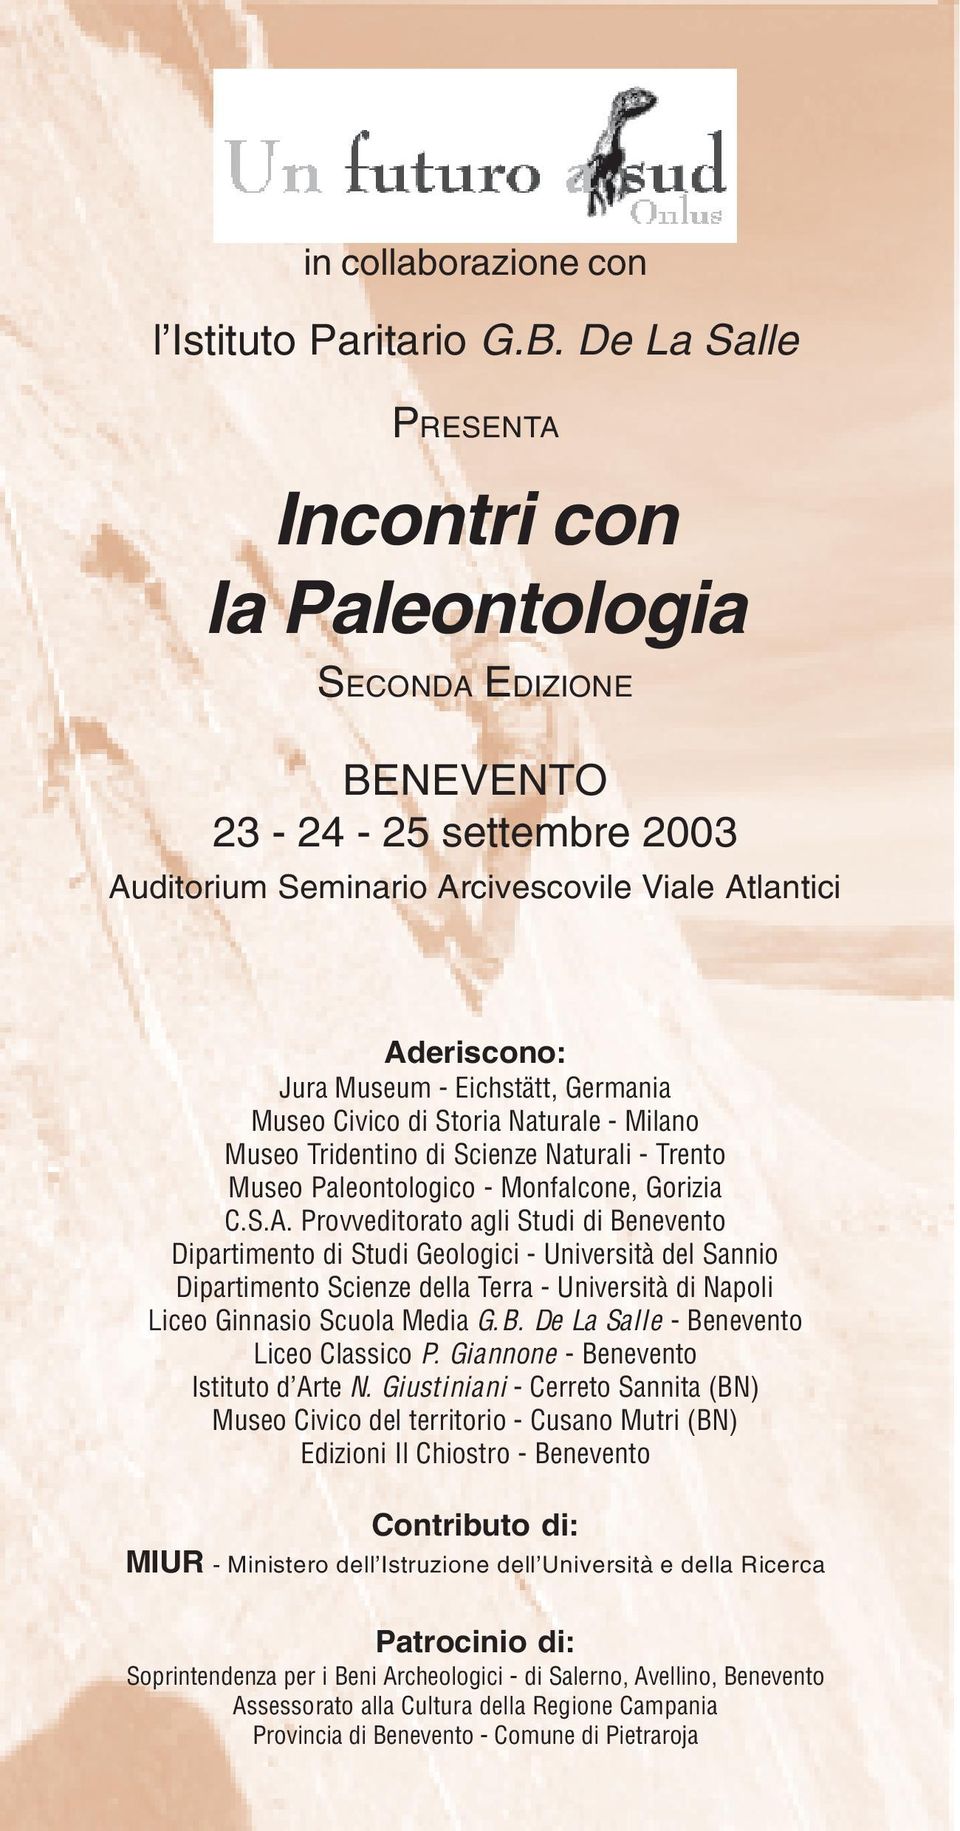 Germania Museo Civico di Storia Naturale - Milano Museo Tridentino di Scienze Naturali - Trento Museo Paleontologico - Monfalcone, Gorizia C.S.A.